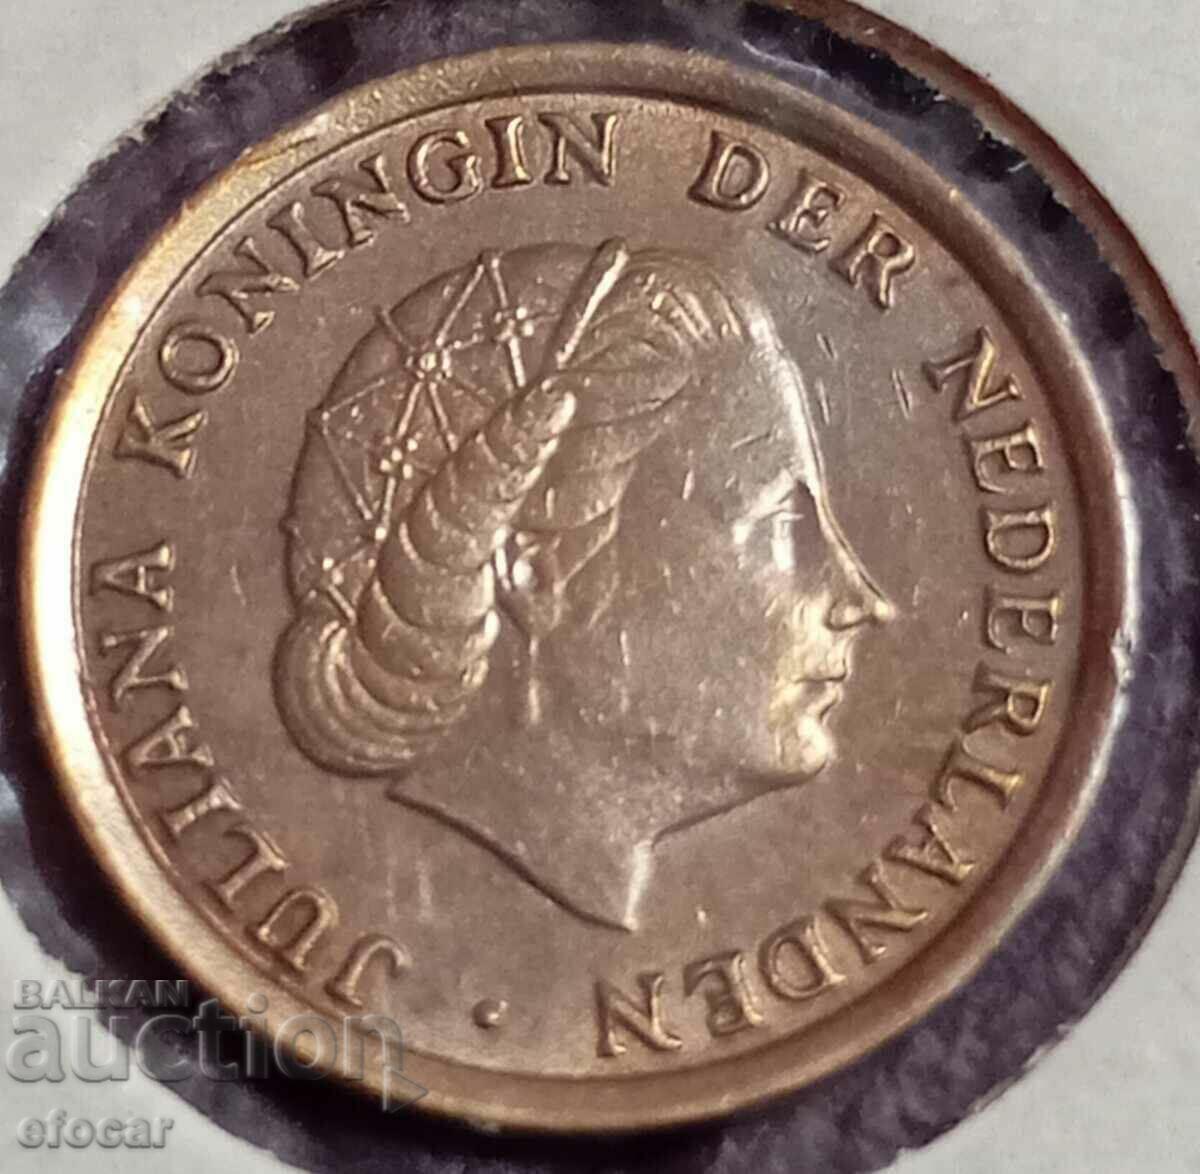 1 cent Ολλανδία 1970